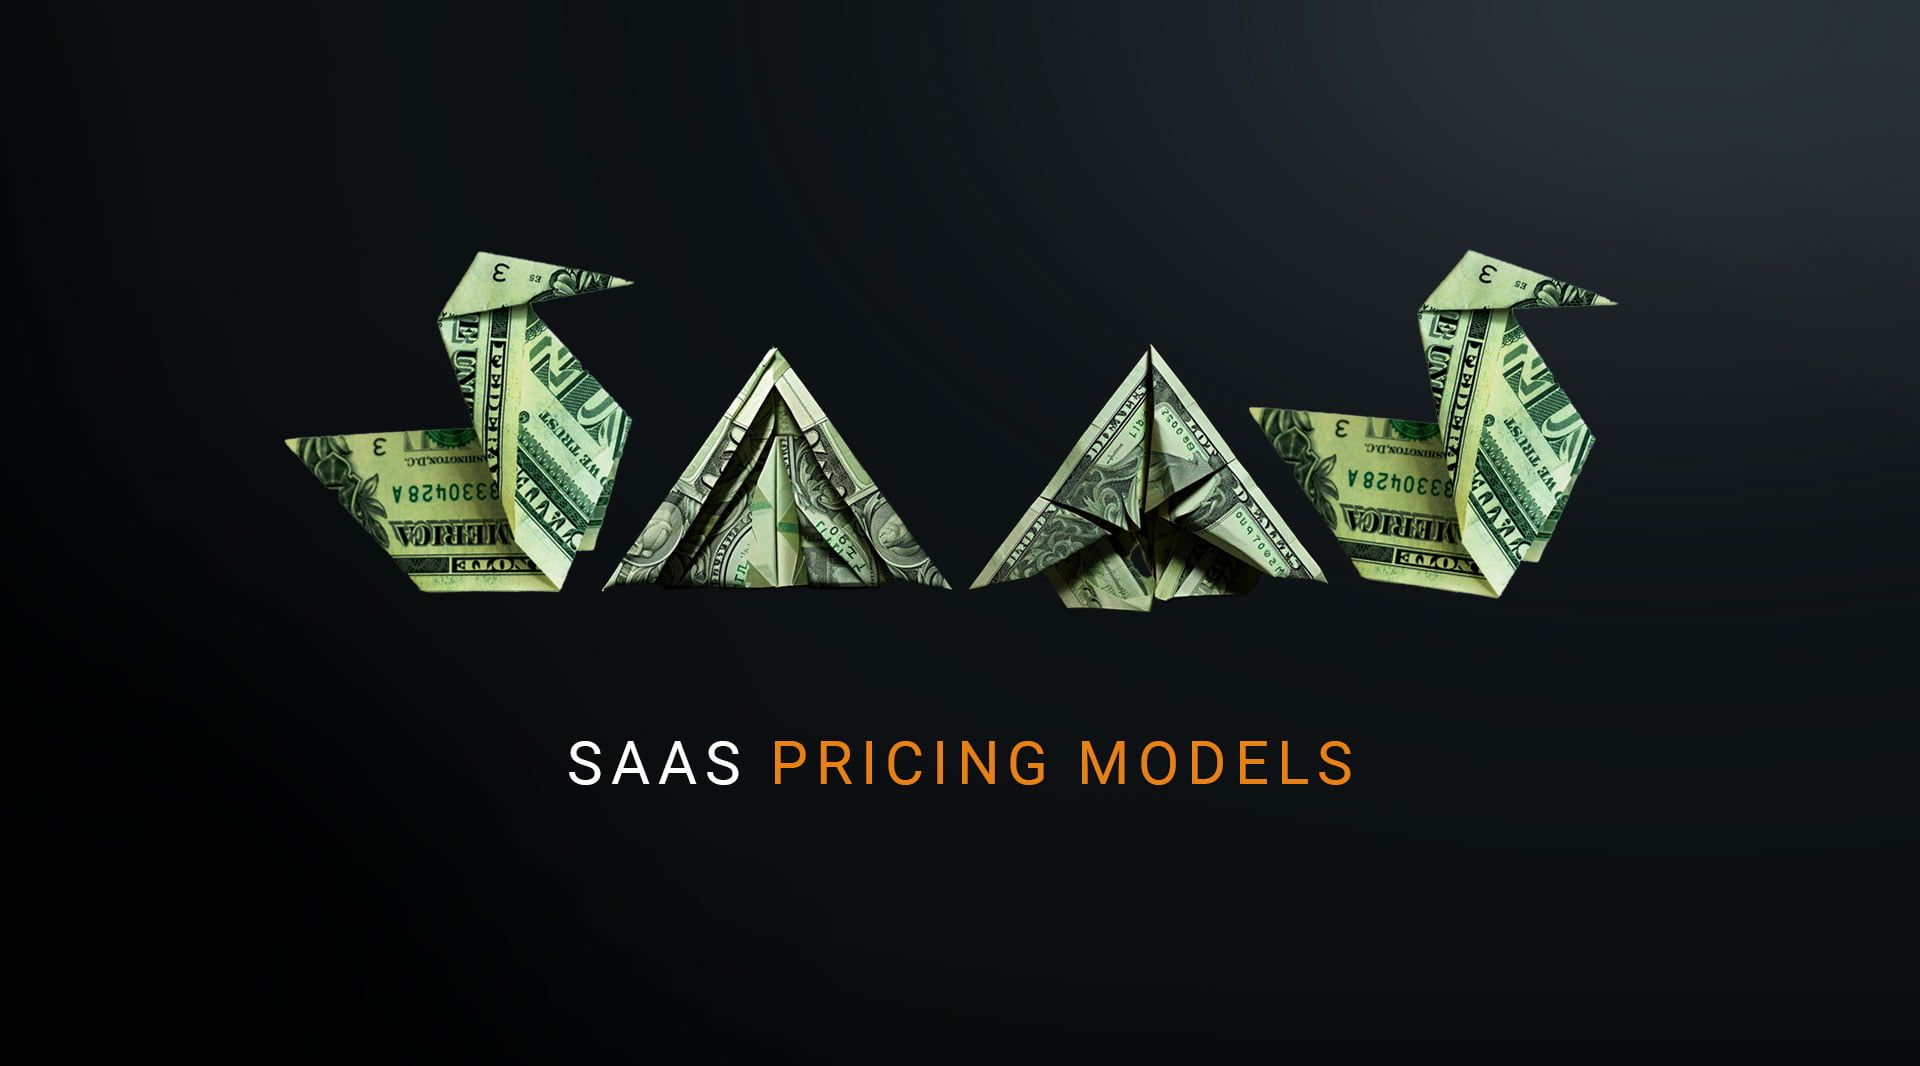 saas pricing models